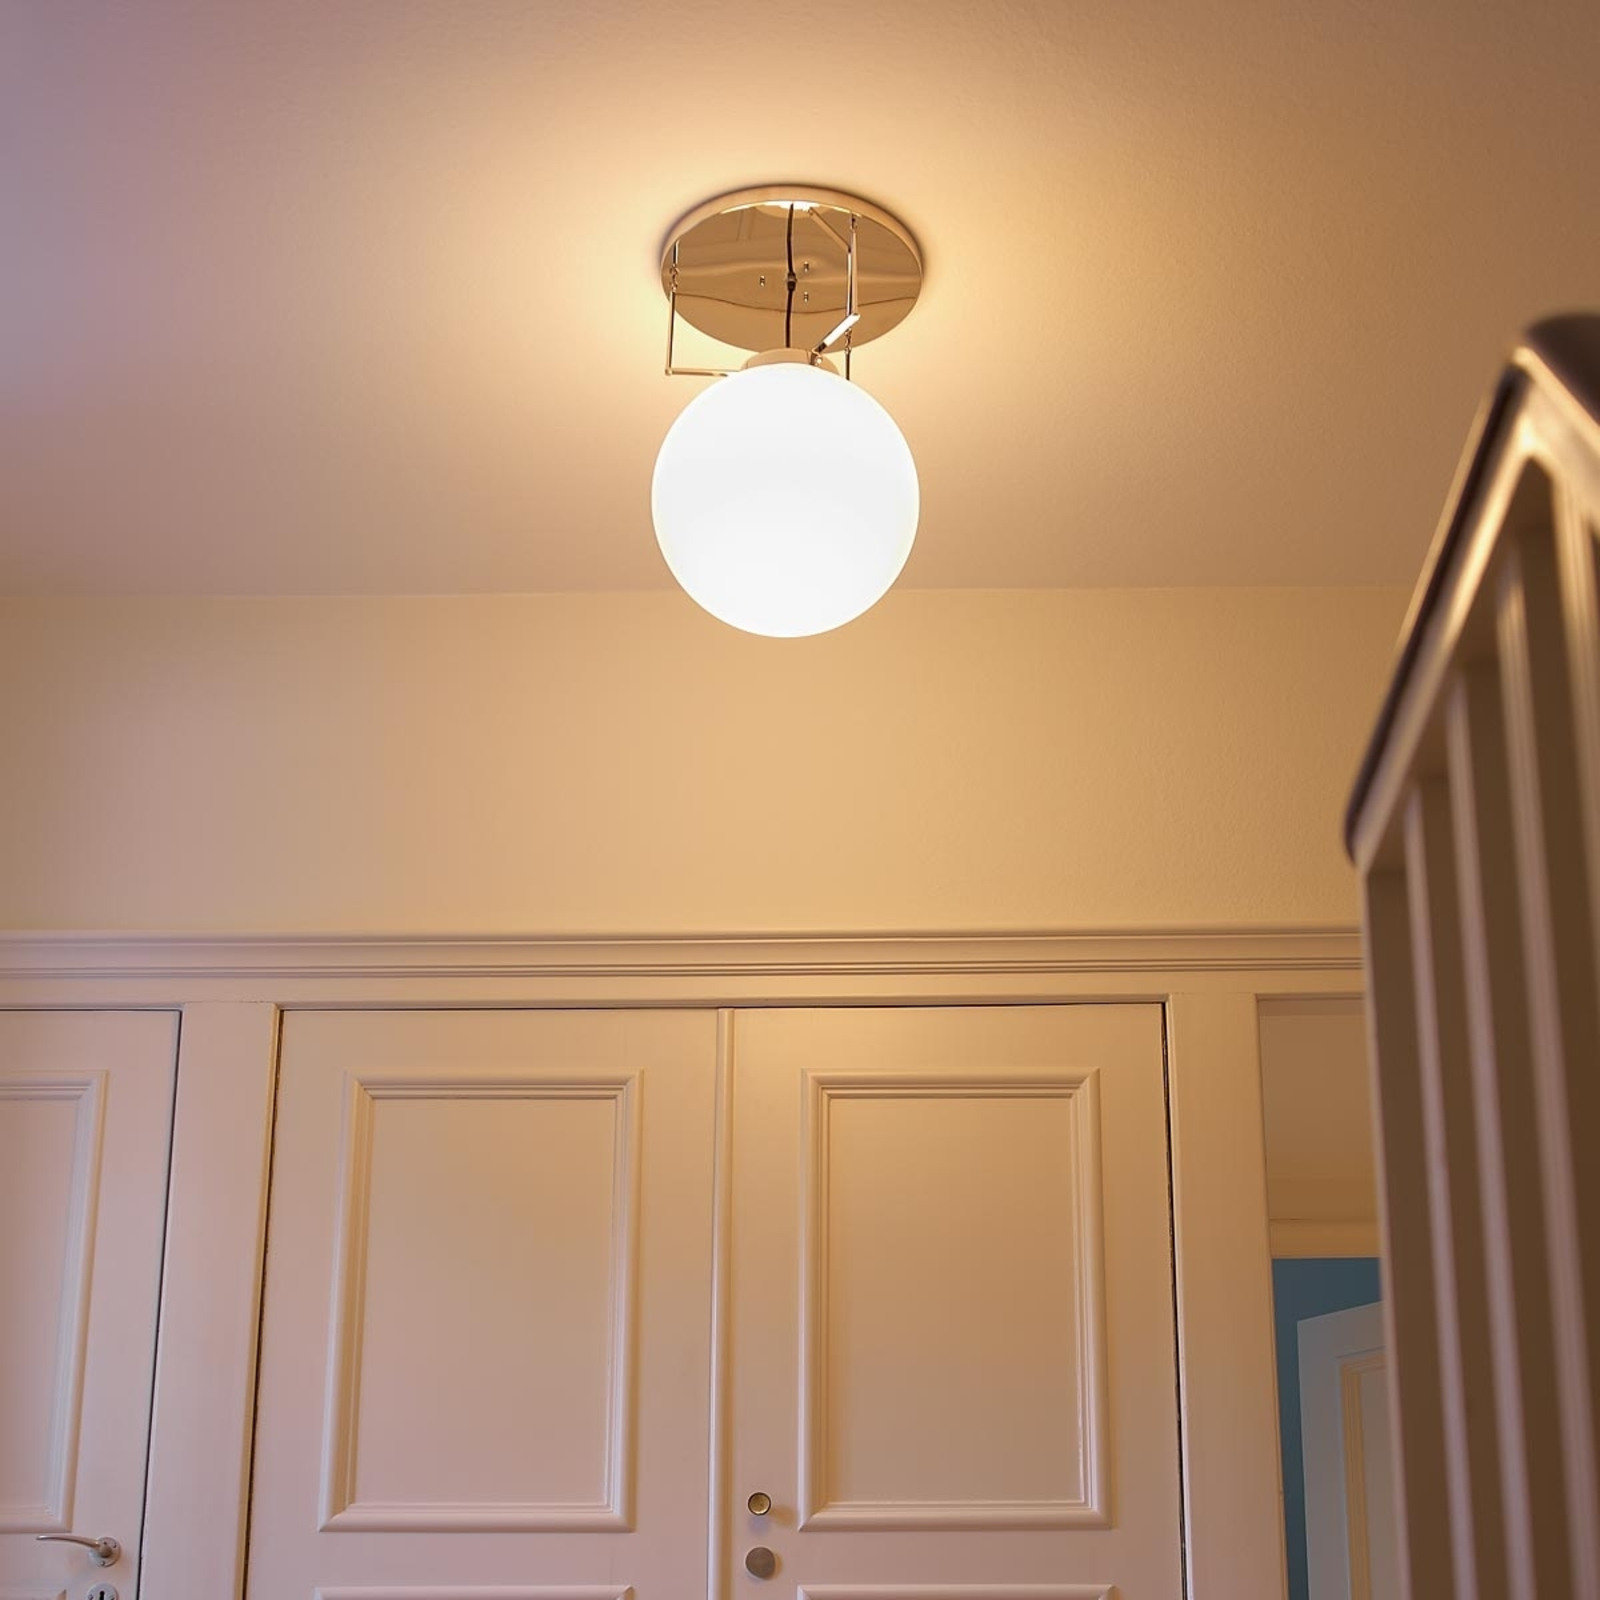 Lampa sufitowa w stylu Bauhaus 35 cm